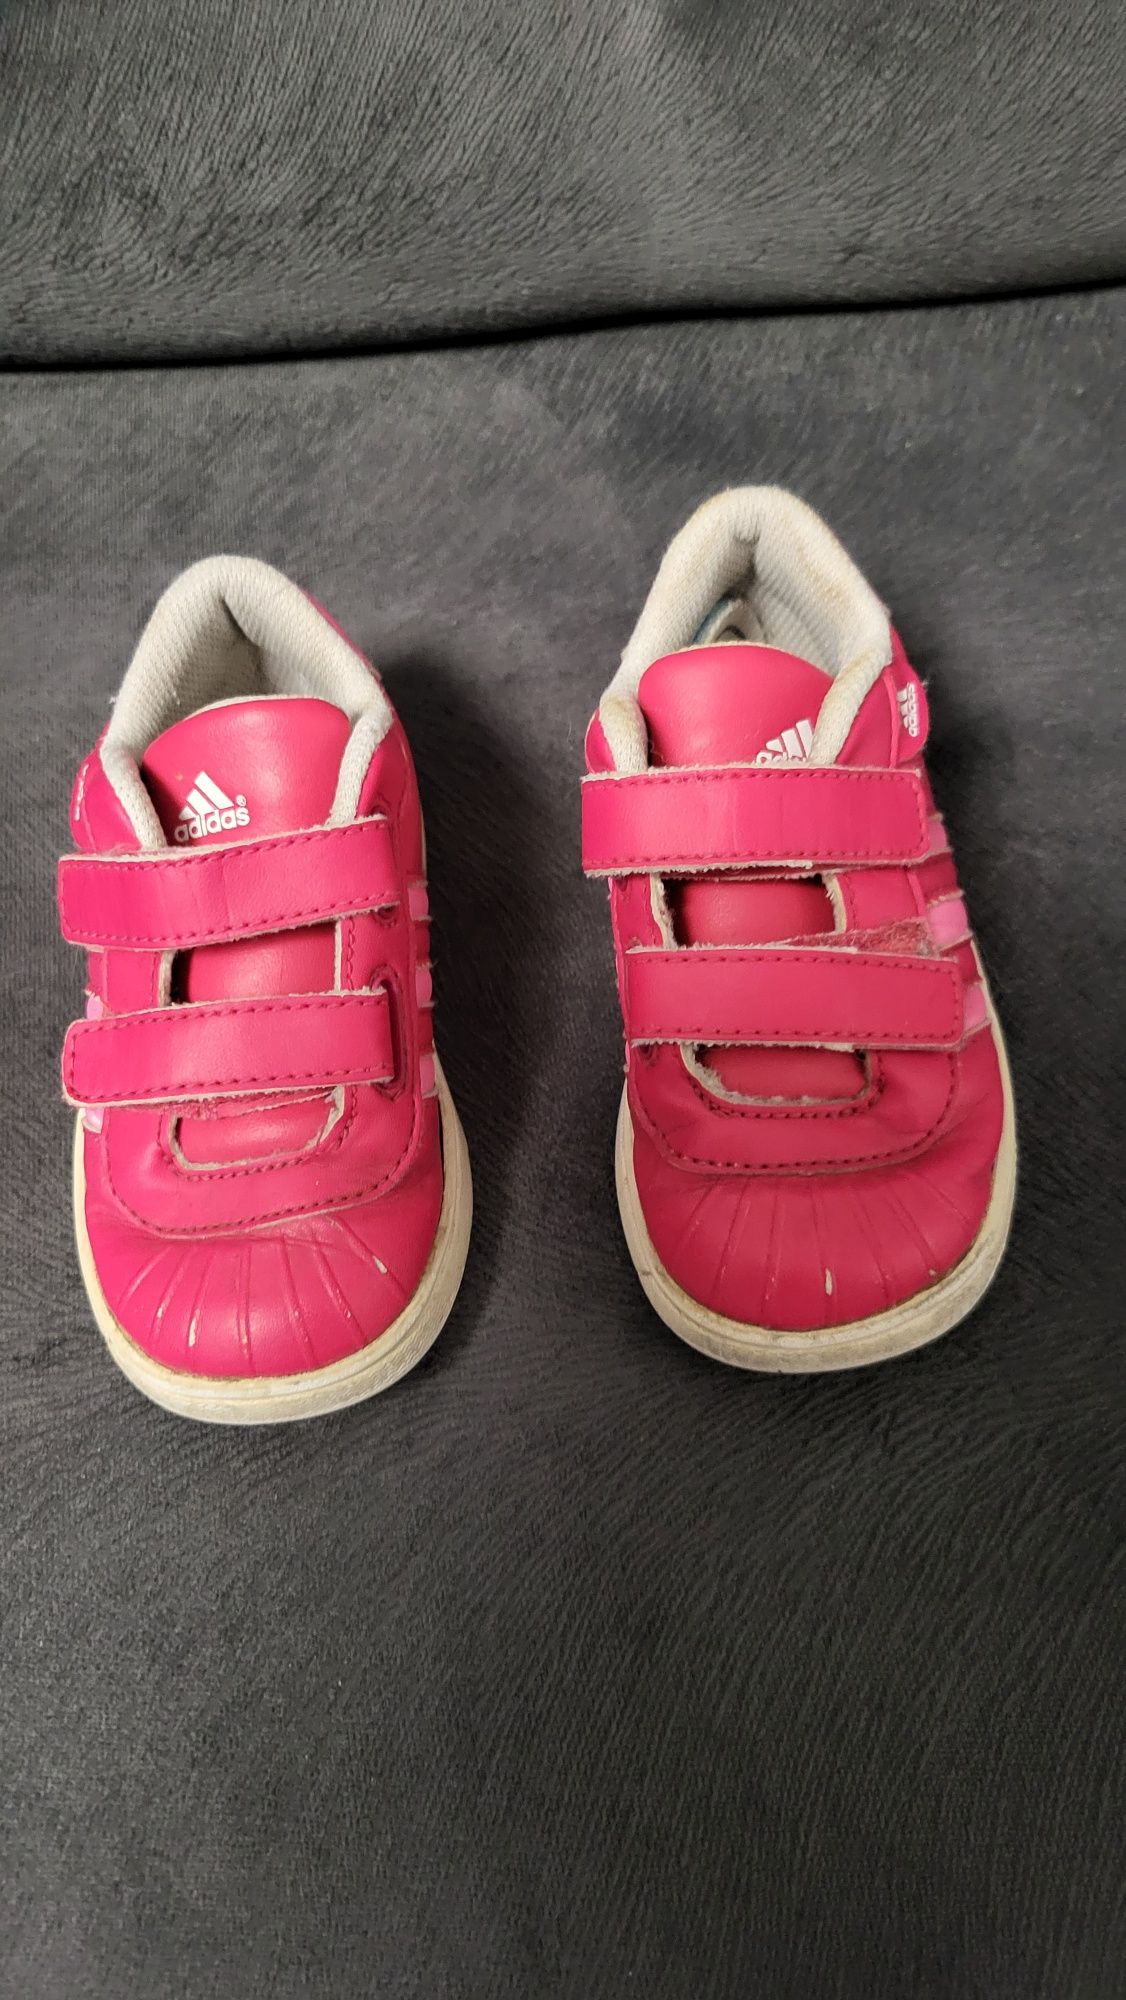 Buty różowe firmy adidas r23